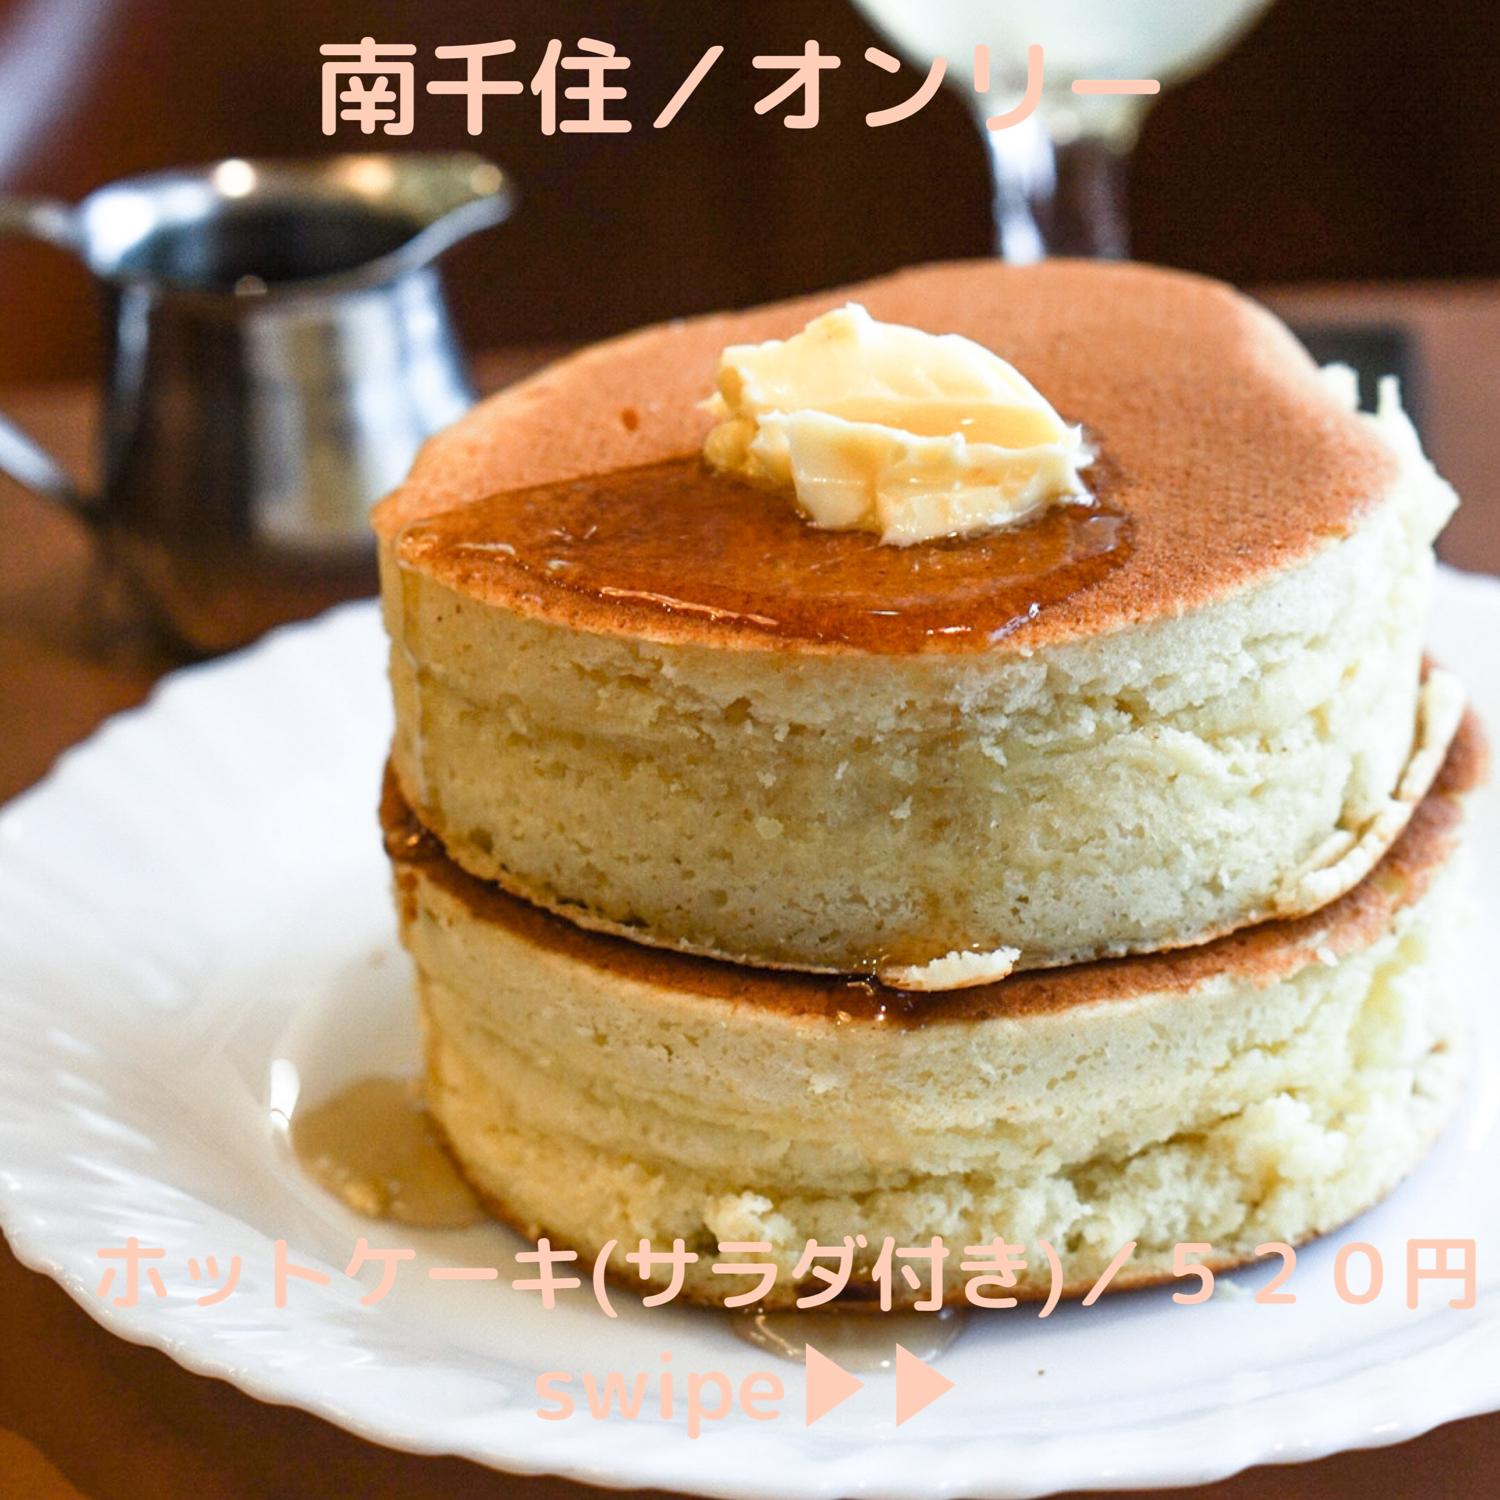 東京都内の 昔ながらホットケーキが食べられるお店7選 東京カフェが投稿したフォトブック Sharee